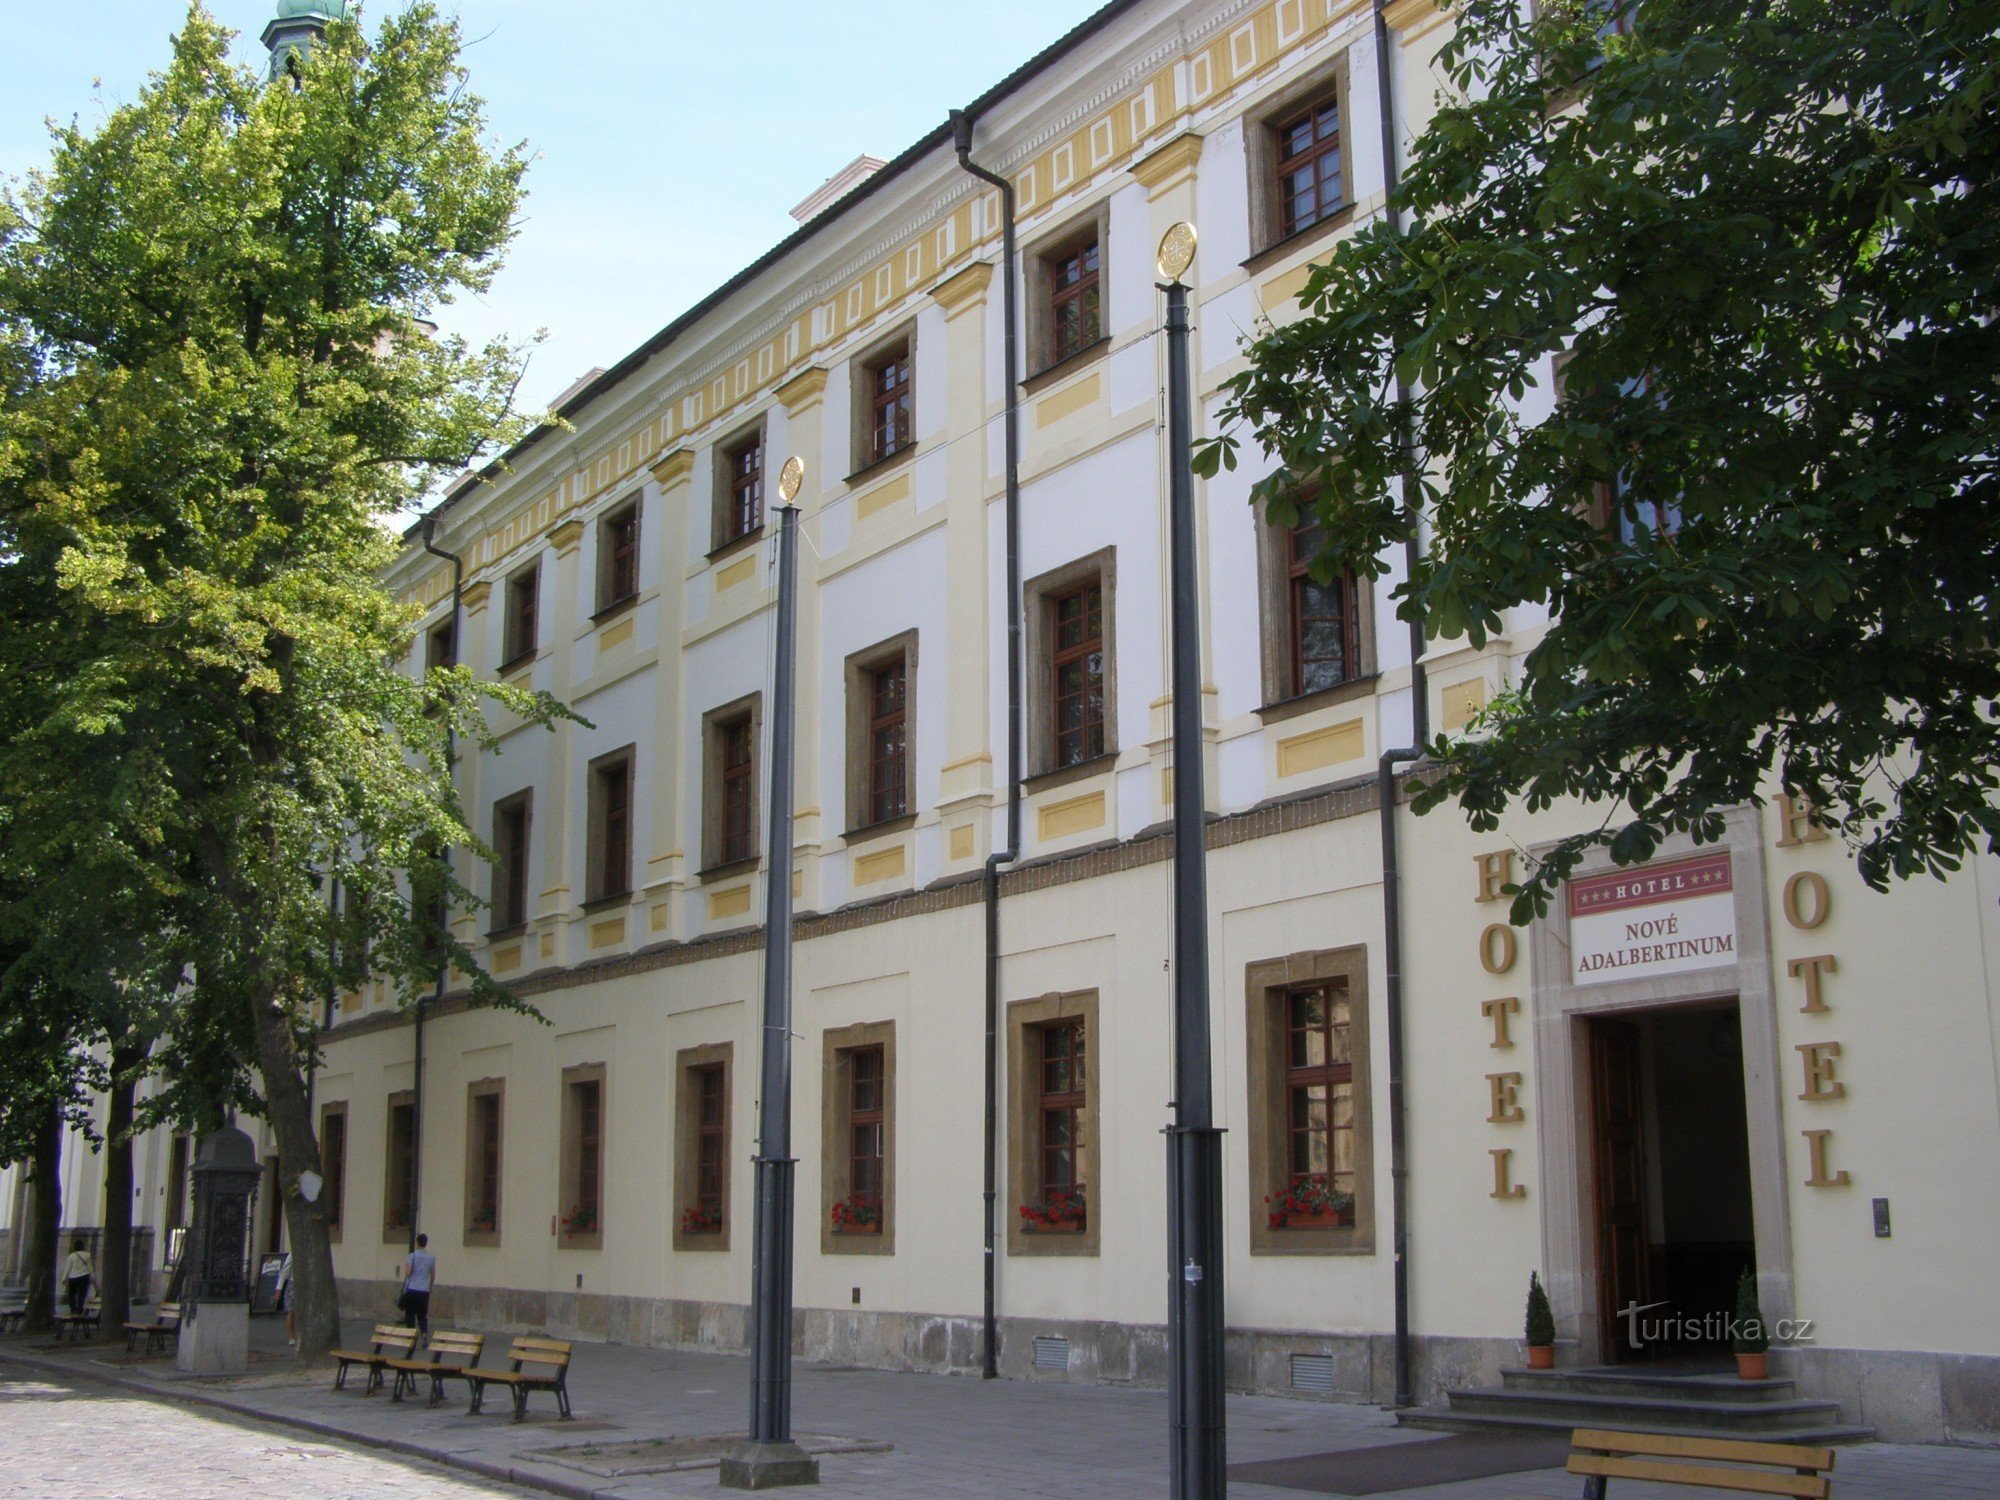 Hradec Králové - volt jezsuita főiskola - Új Adalbertinum